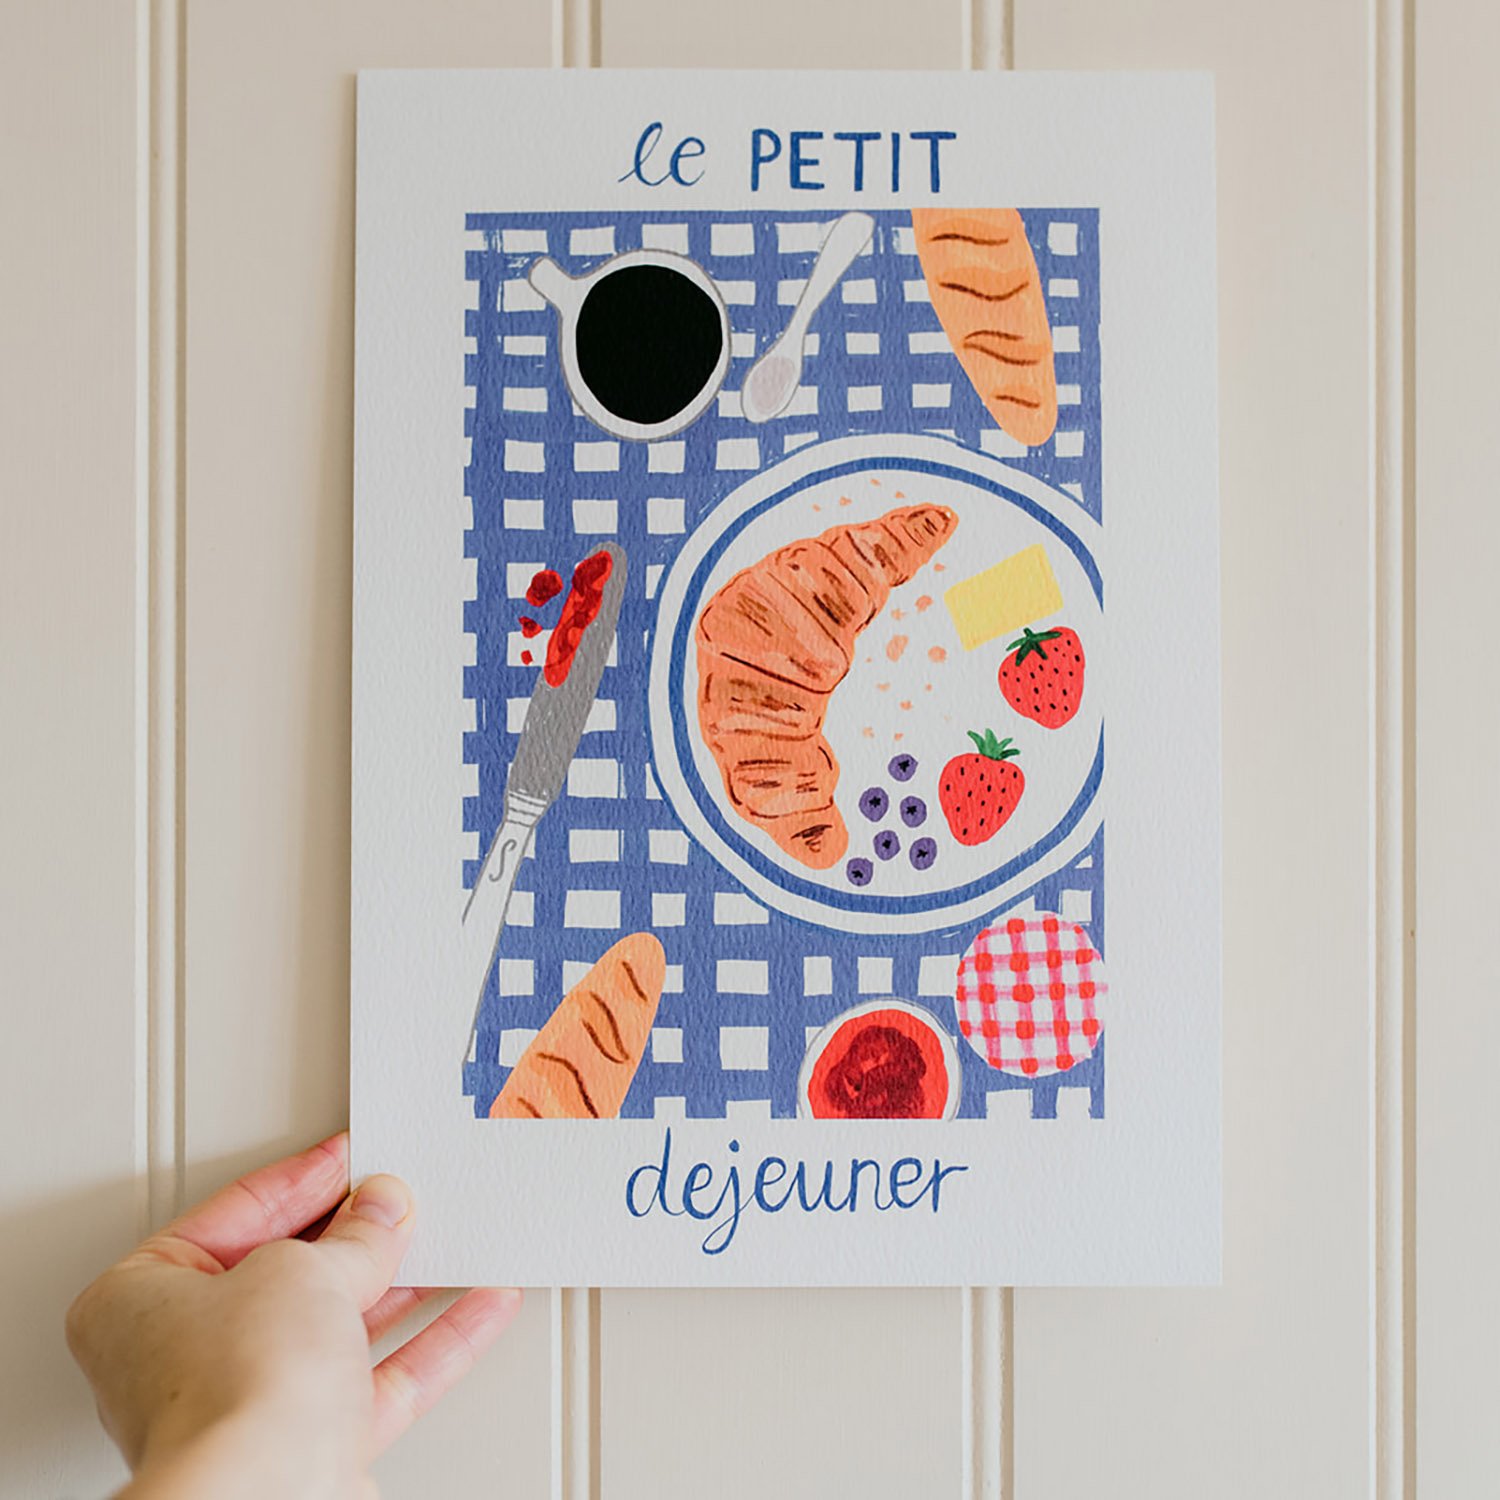 Le Petit Dejeuner Art Print - A4